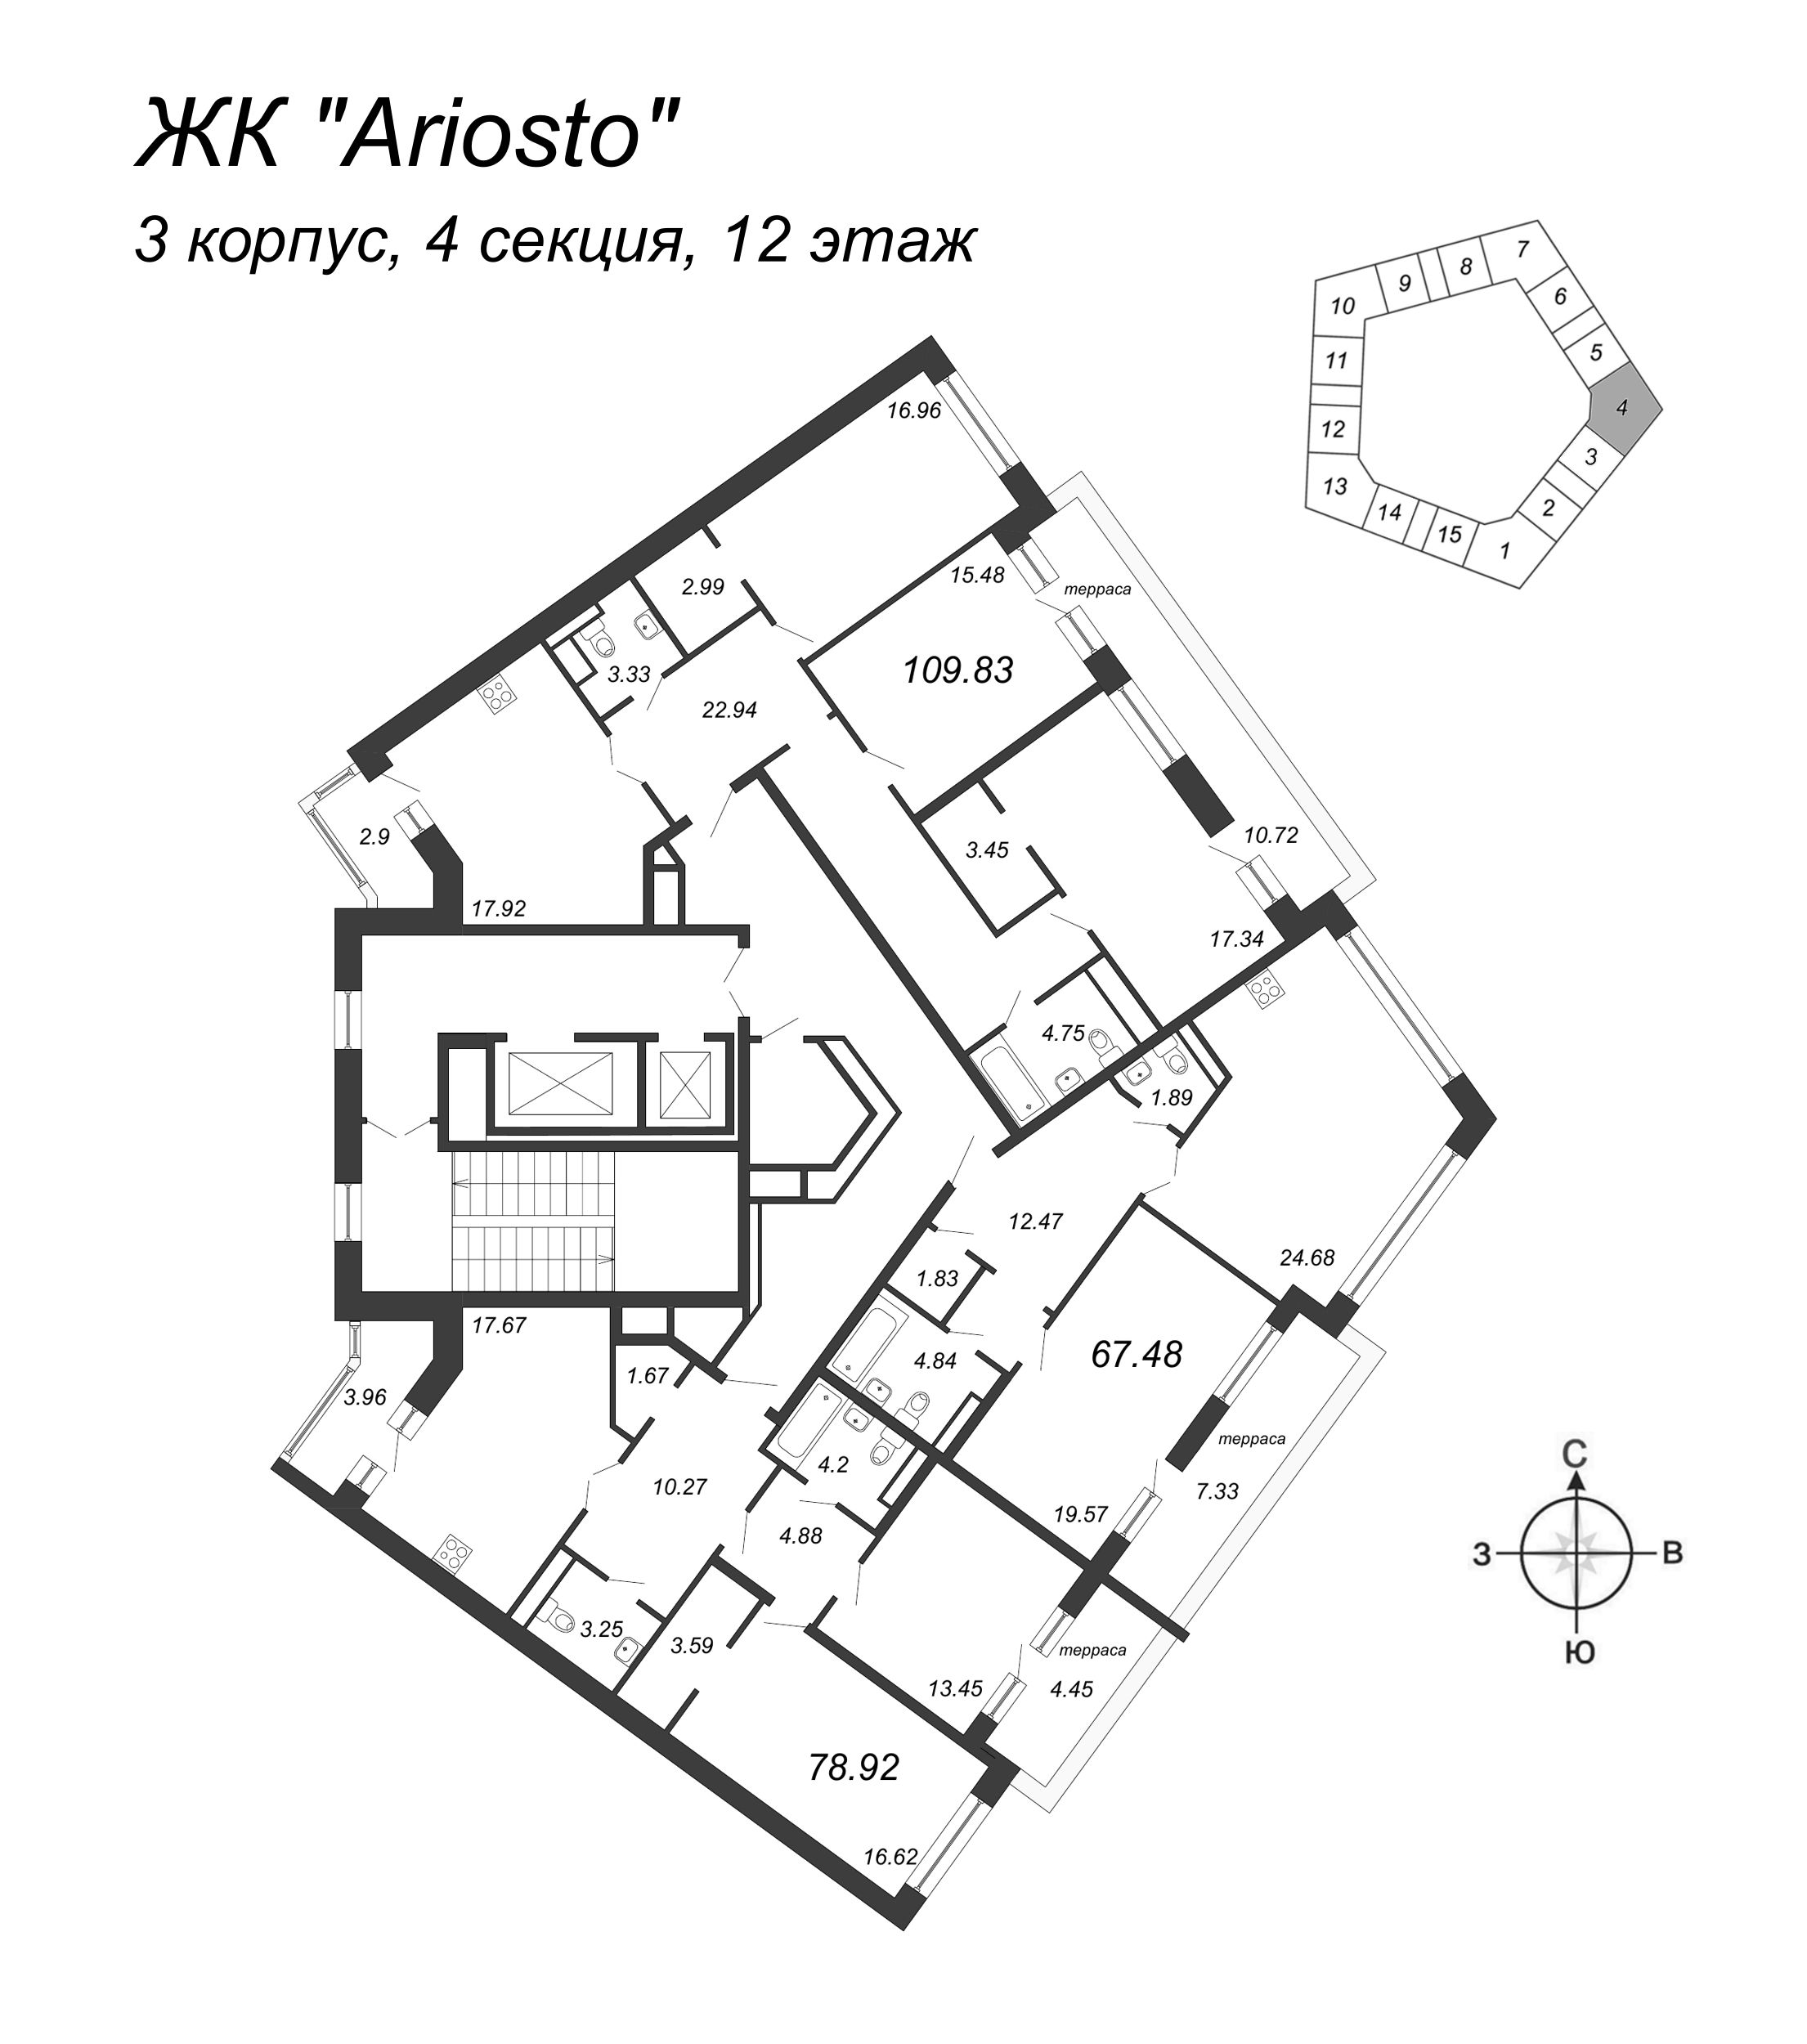 3-комнатная квартира, 109.83 м² в ЖК "Ariosto" - планировка этажа